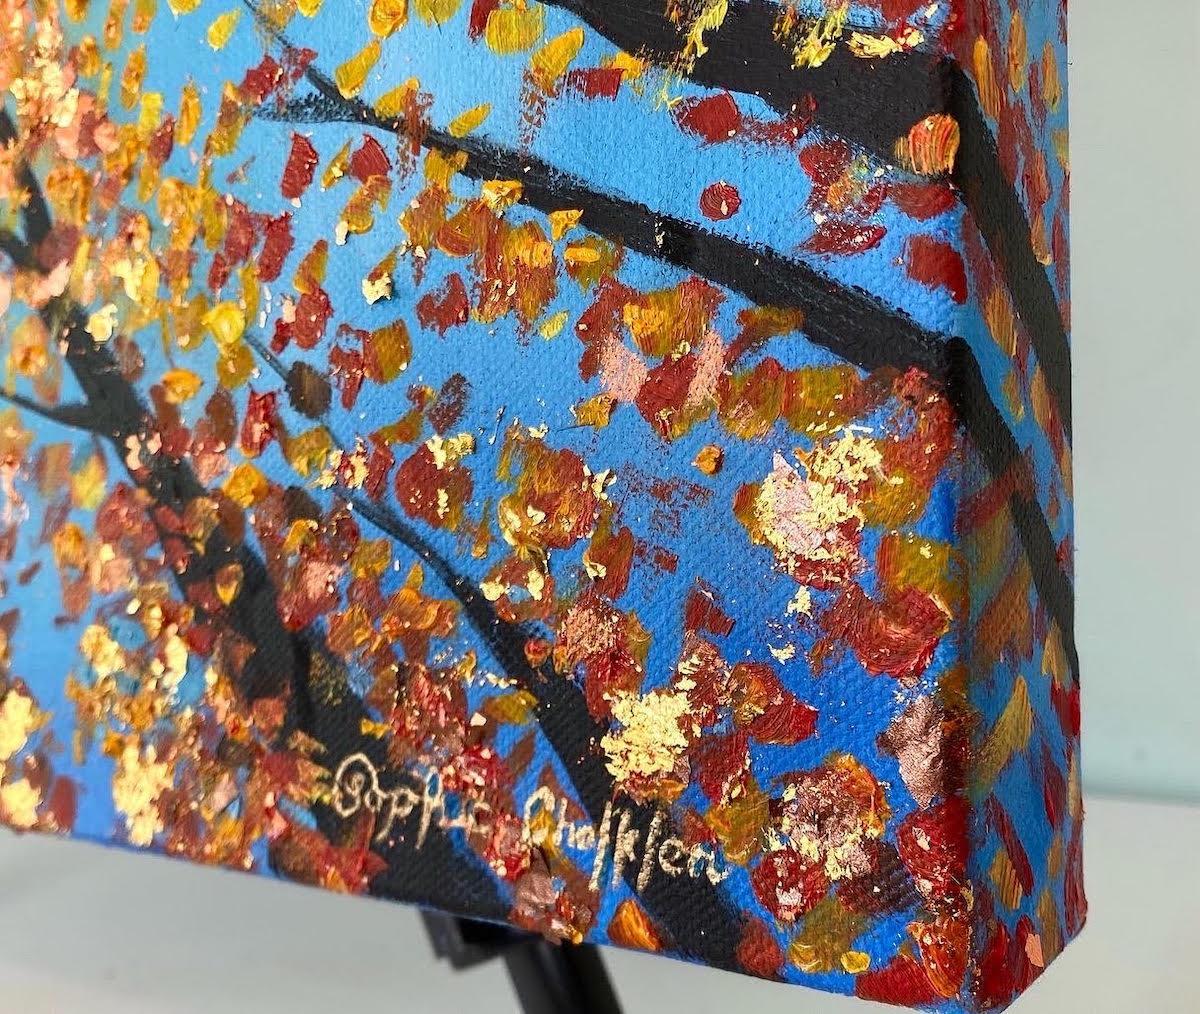 Reach For the Light von Sophia Chalklen [2022]
original und hängen vom Künstler signiert 

Öl auf Leinwand mit 24-karätigem Blattgold, Kupfer und Bronze verziert.

Bildgröße: H:51 cm x B:61 cm

Gesamtgröße des ungerahmten Werks: H:51 cm x B:61 cm x